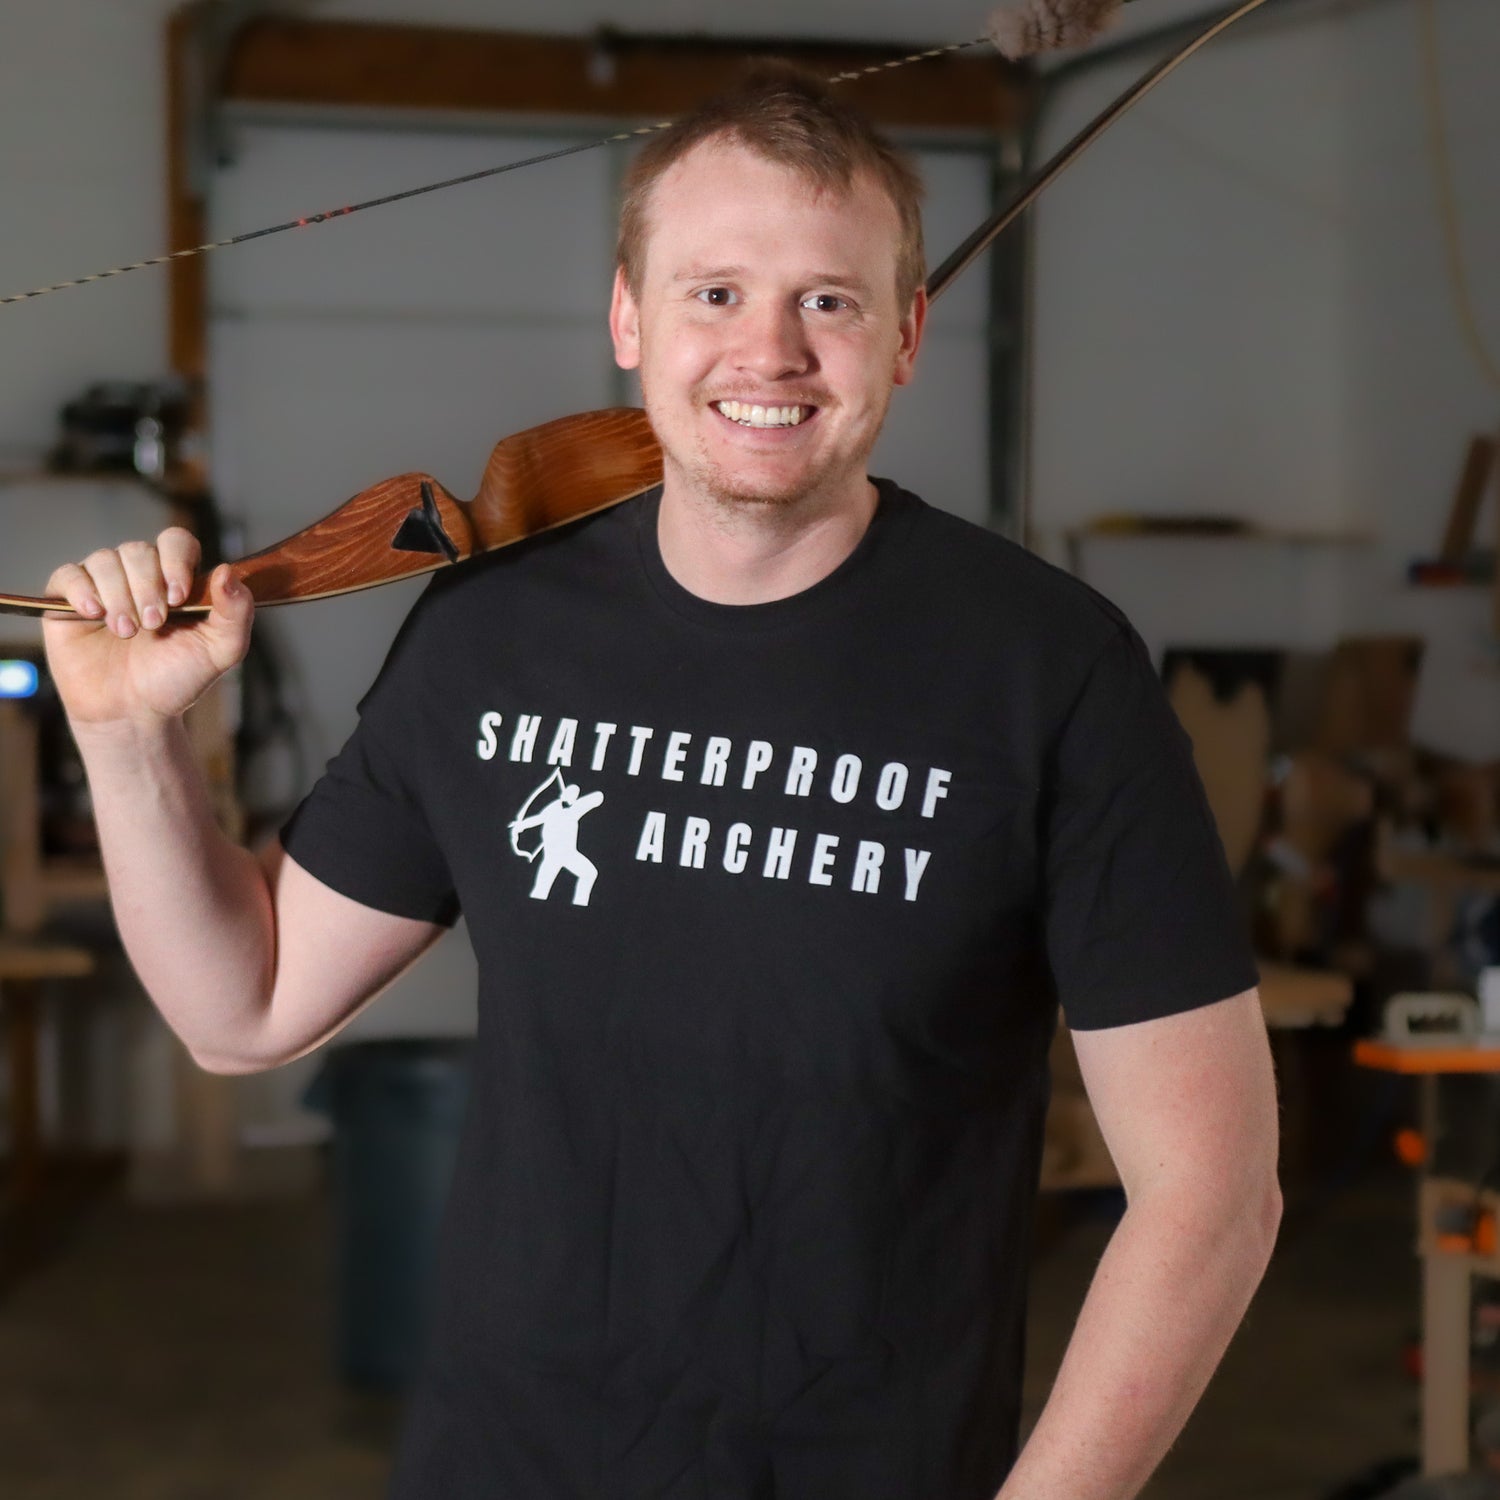 SHATTERPROOF ARCHERY TRUCKER HAT – Shatterproof Archery